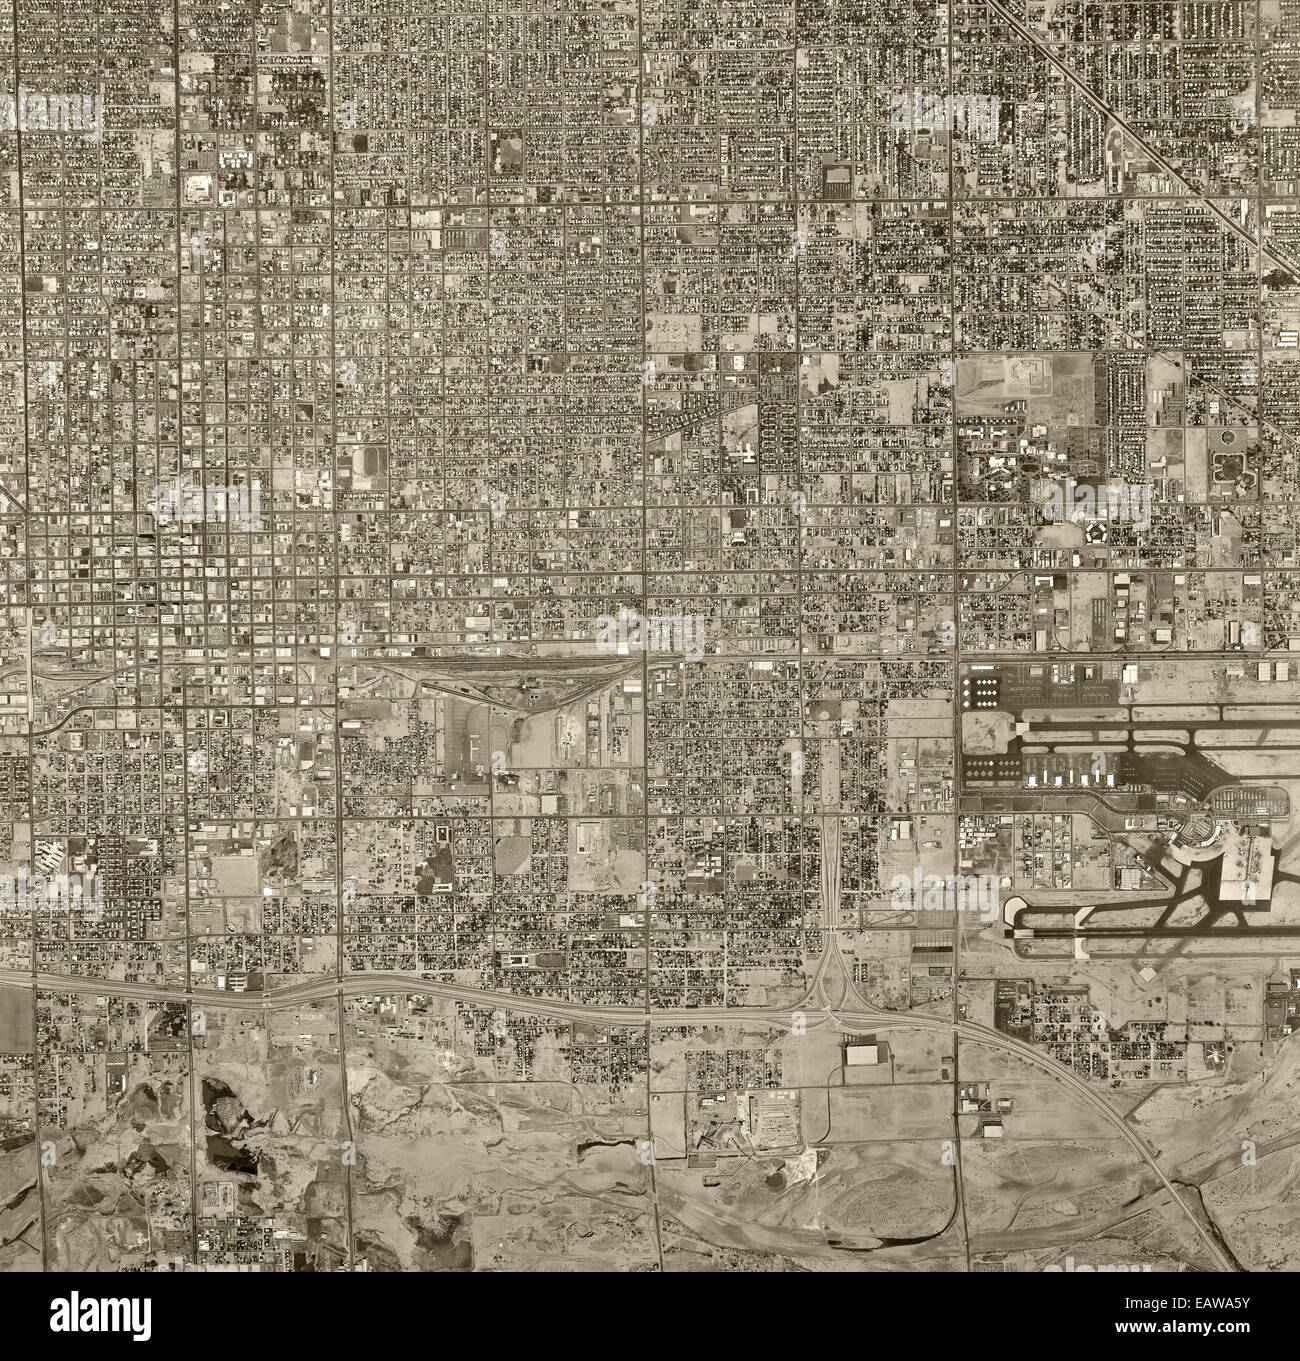 Storico di fotografia aerea di Phoenix, Arizona, 1967 Foto Stock